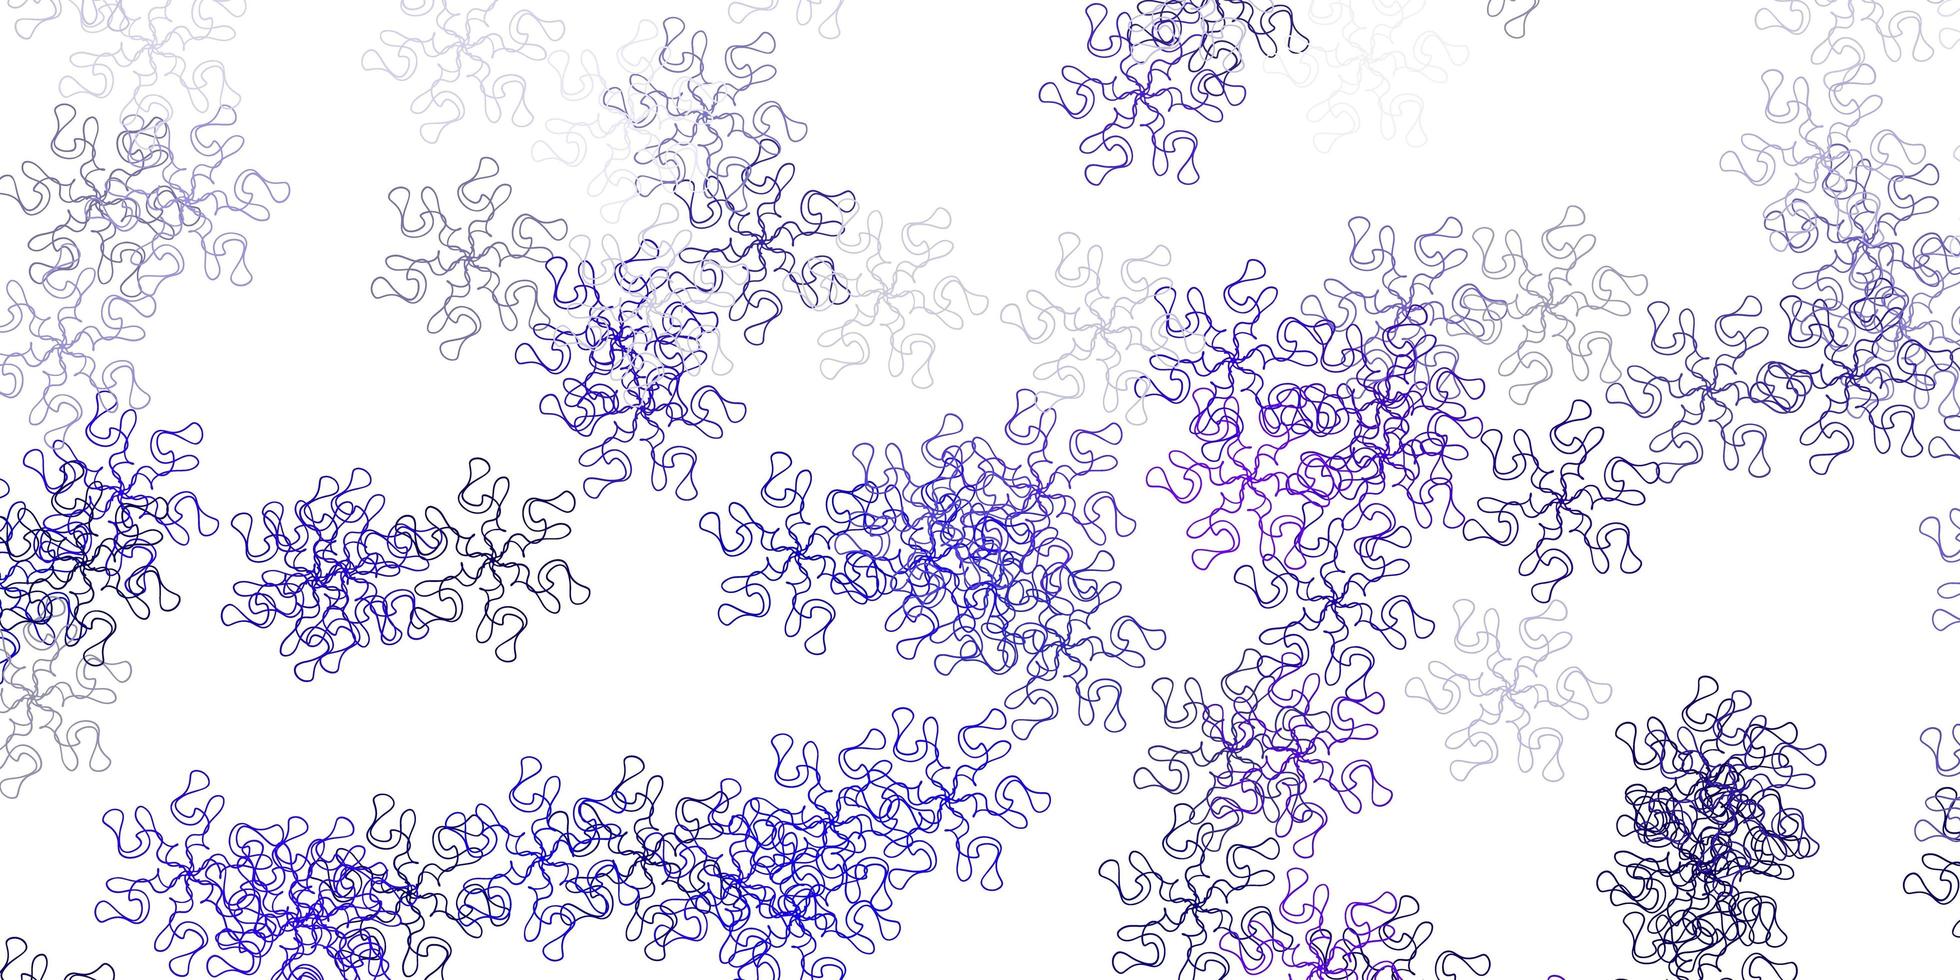 layout naturale vettoriale viola chiaro con fiori.